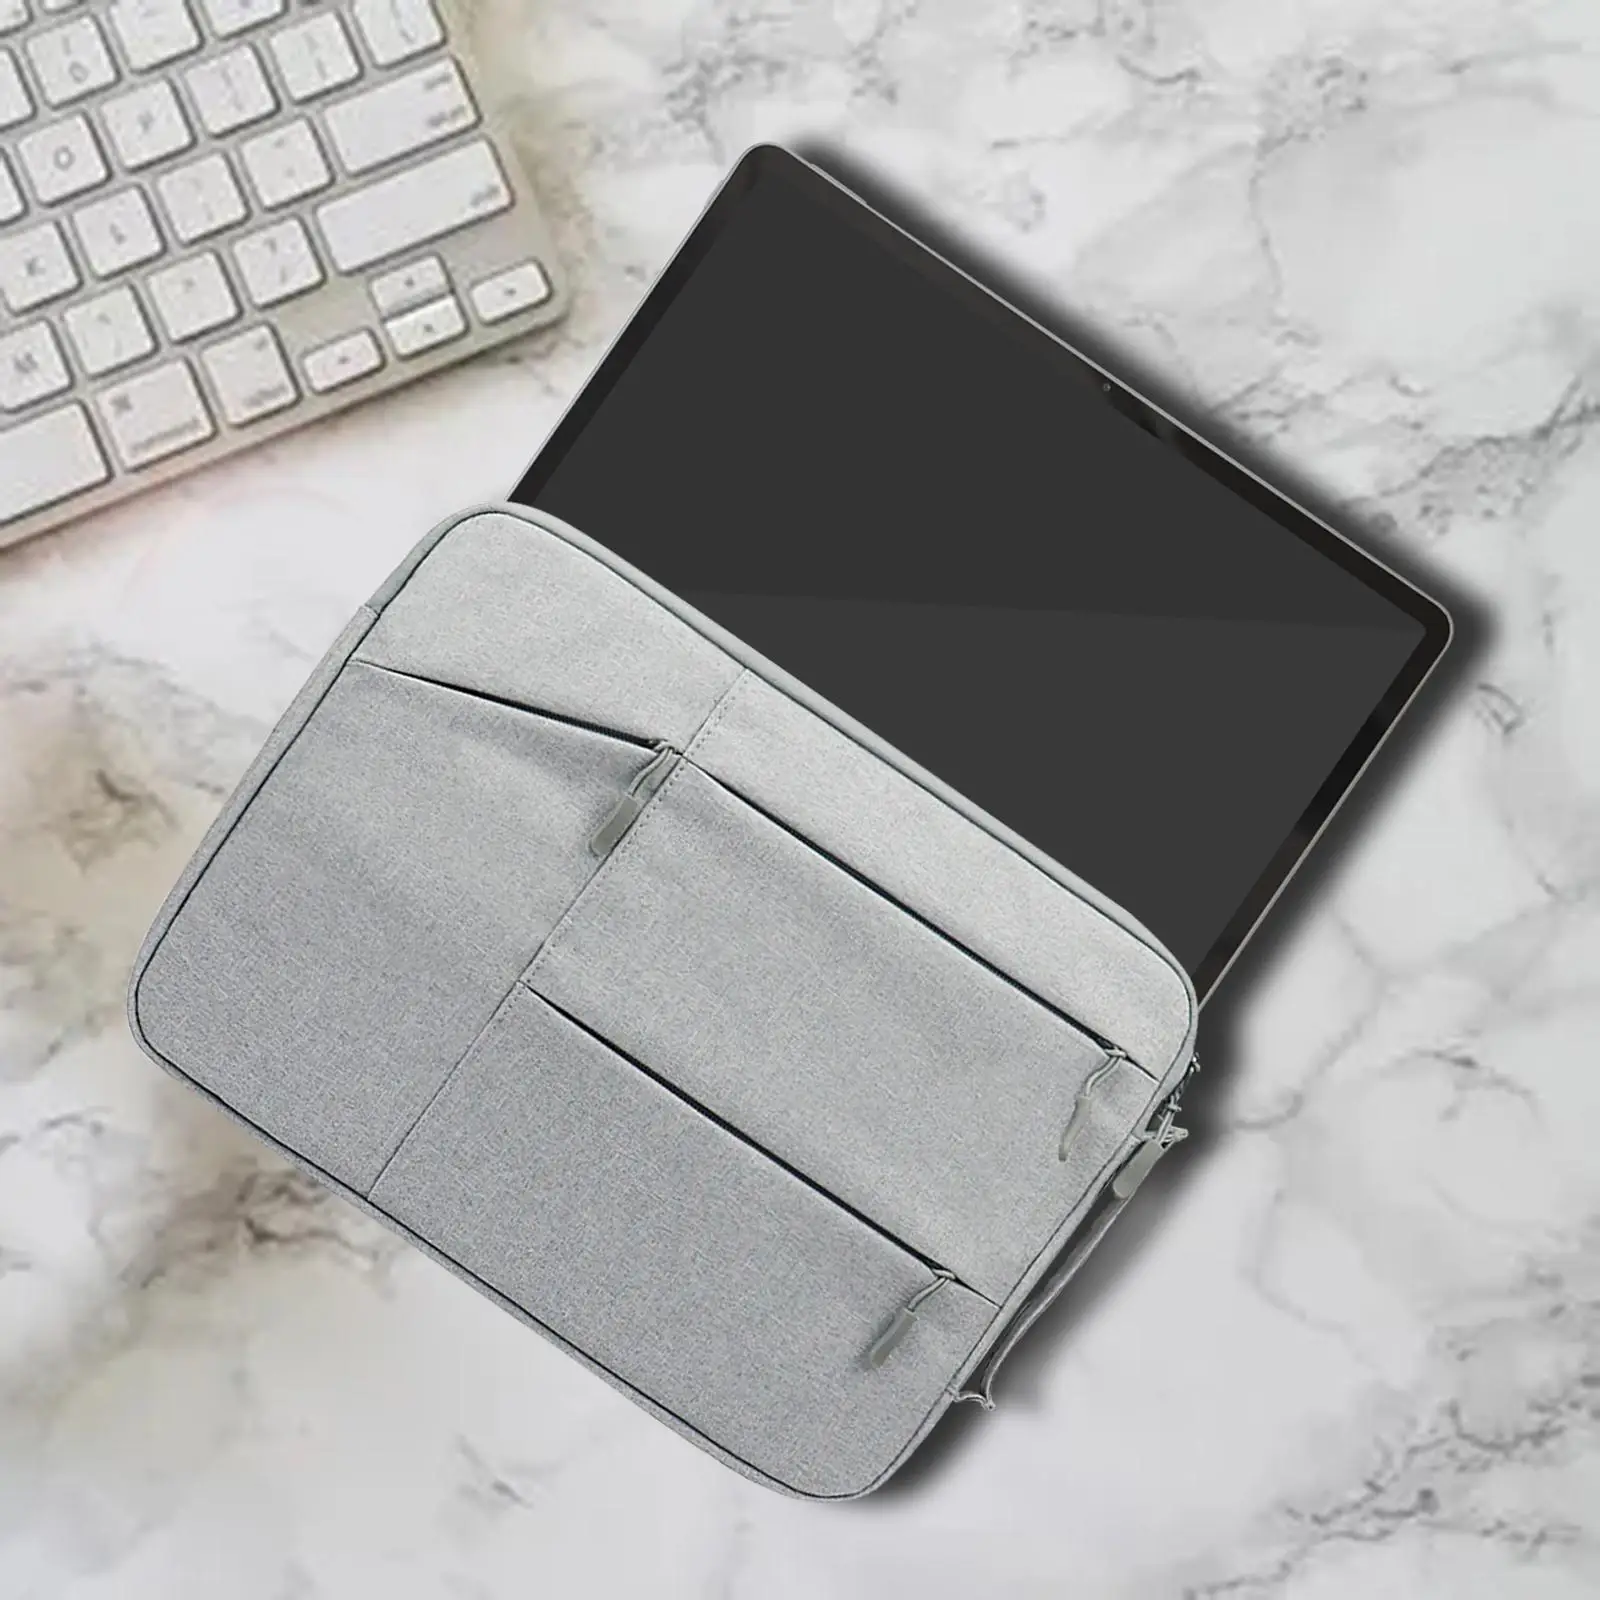 Laptop Sleeve Bag Sleek with Handle Waterproof Storage Laptop Case for Briefcase Men